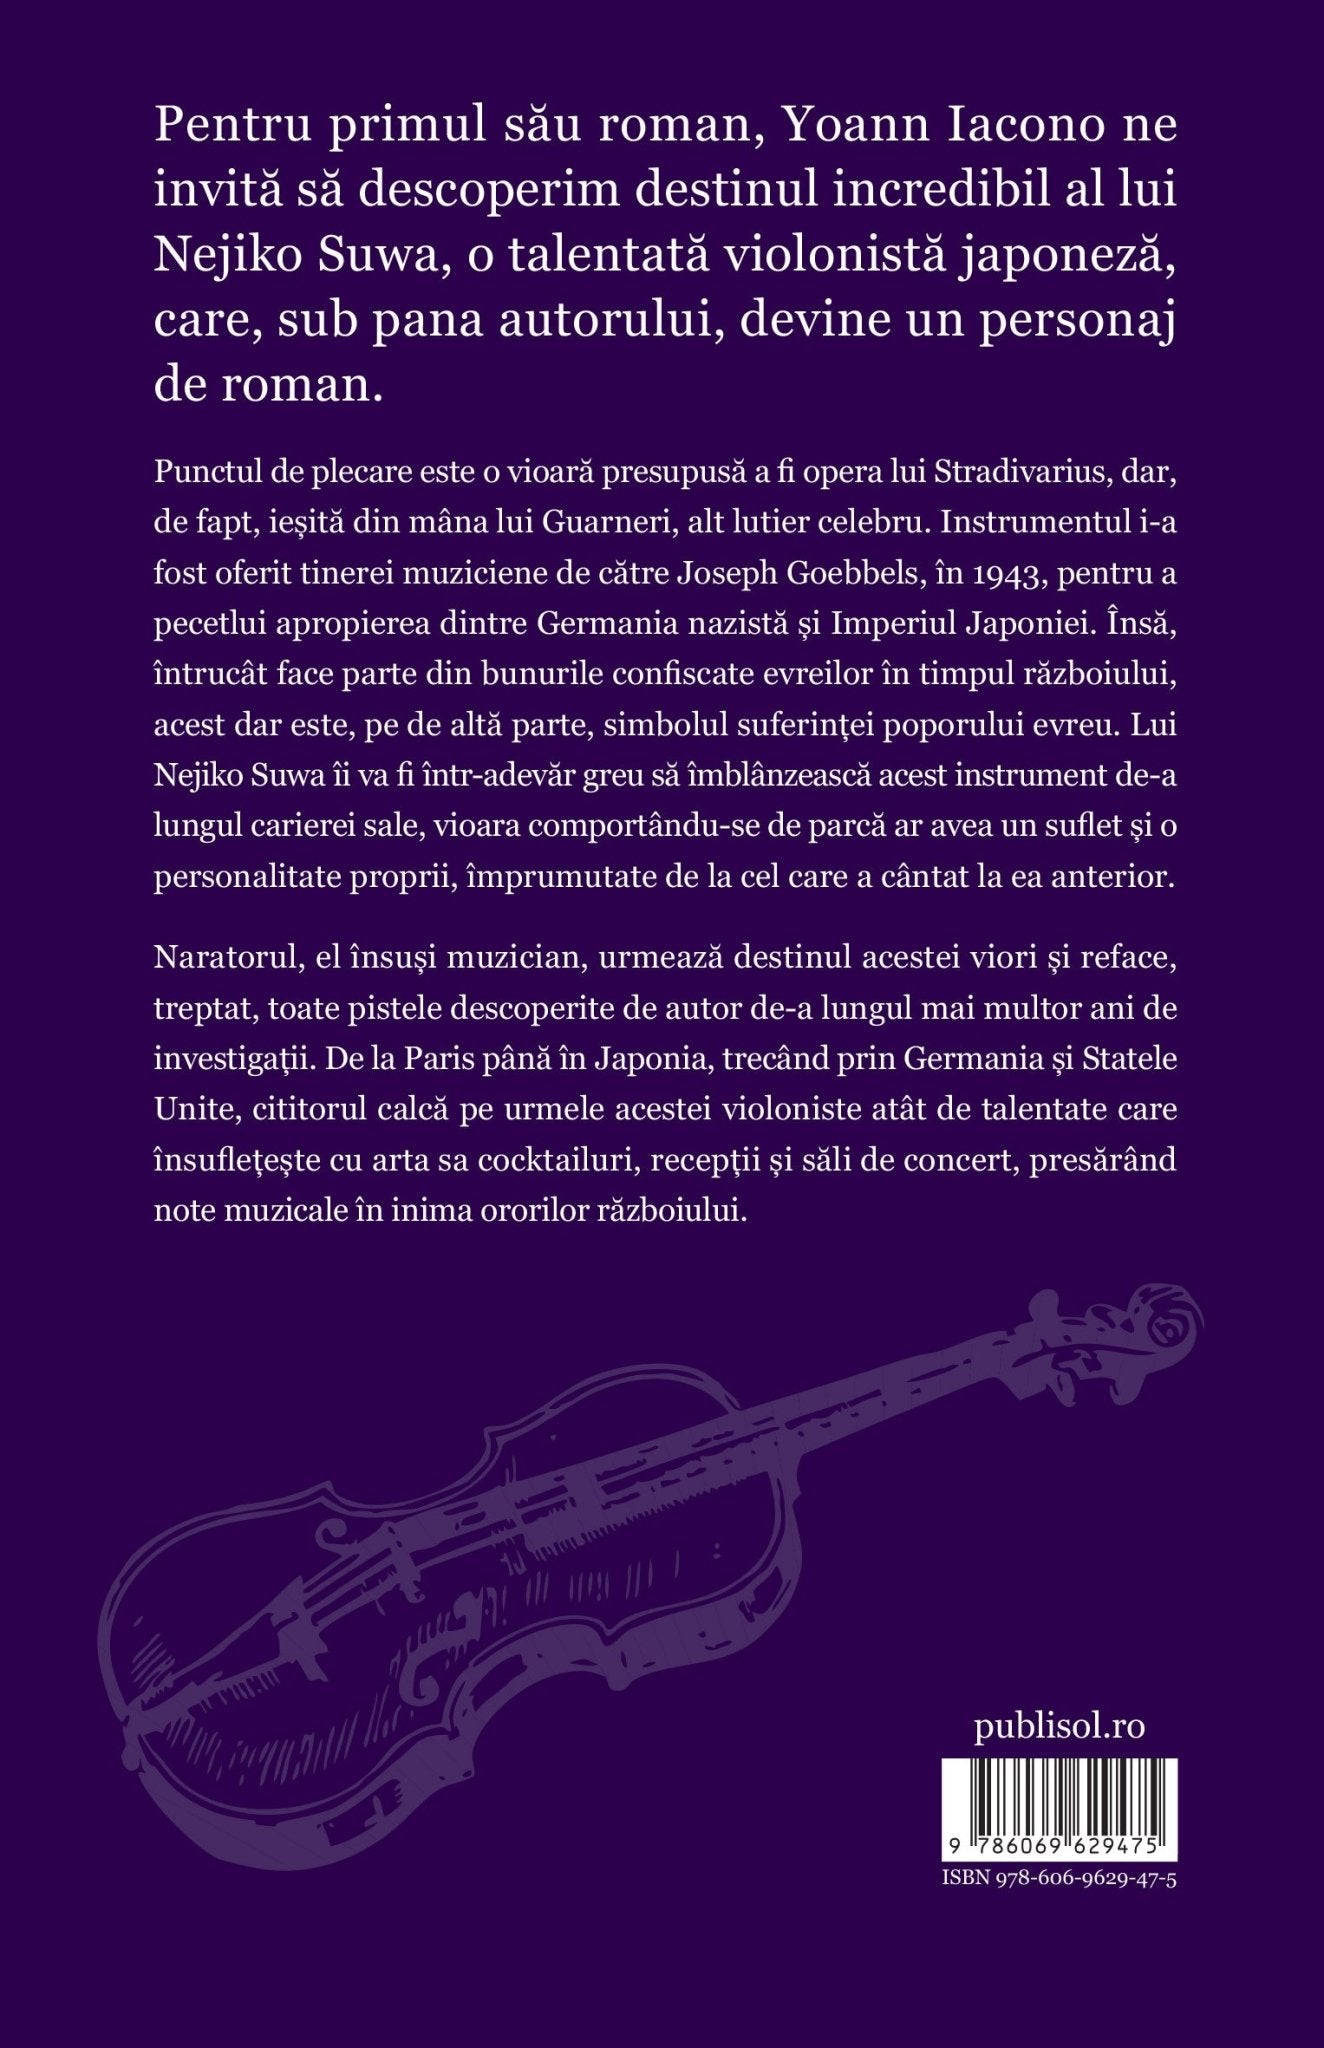 Un Stradivarius de la Goebbels - Publisol.ro